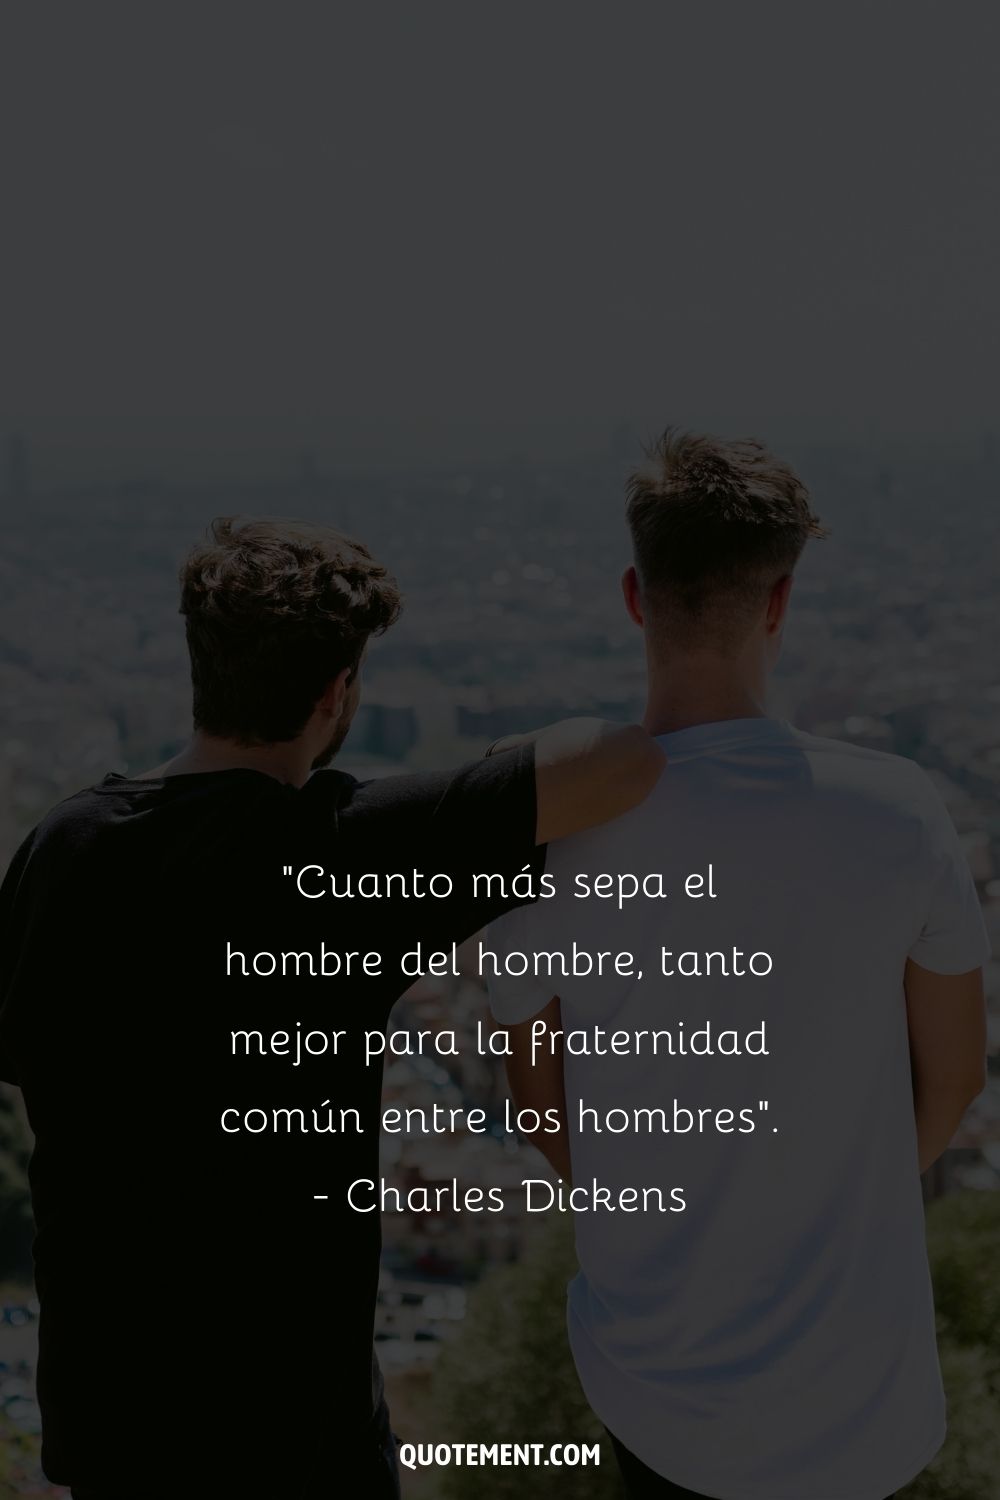 "Cuanto más sepa el hombre del hombre, mejor será para la fraternidad común entre los hombres". - Charles Dickens